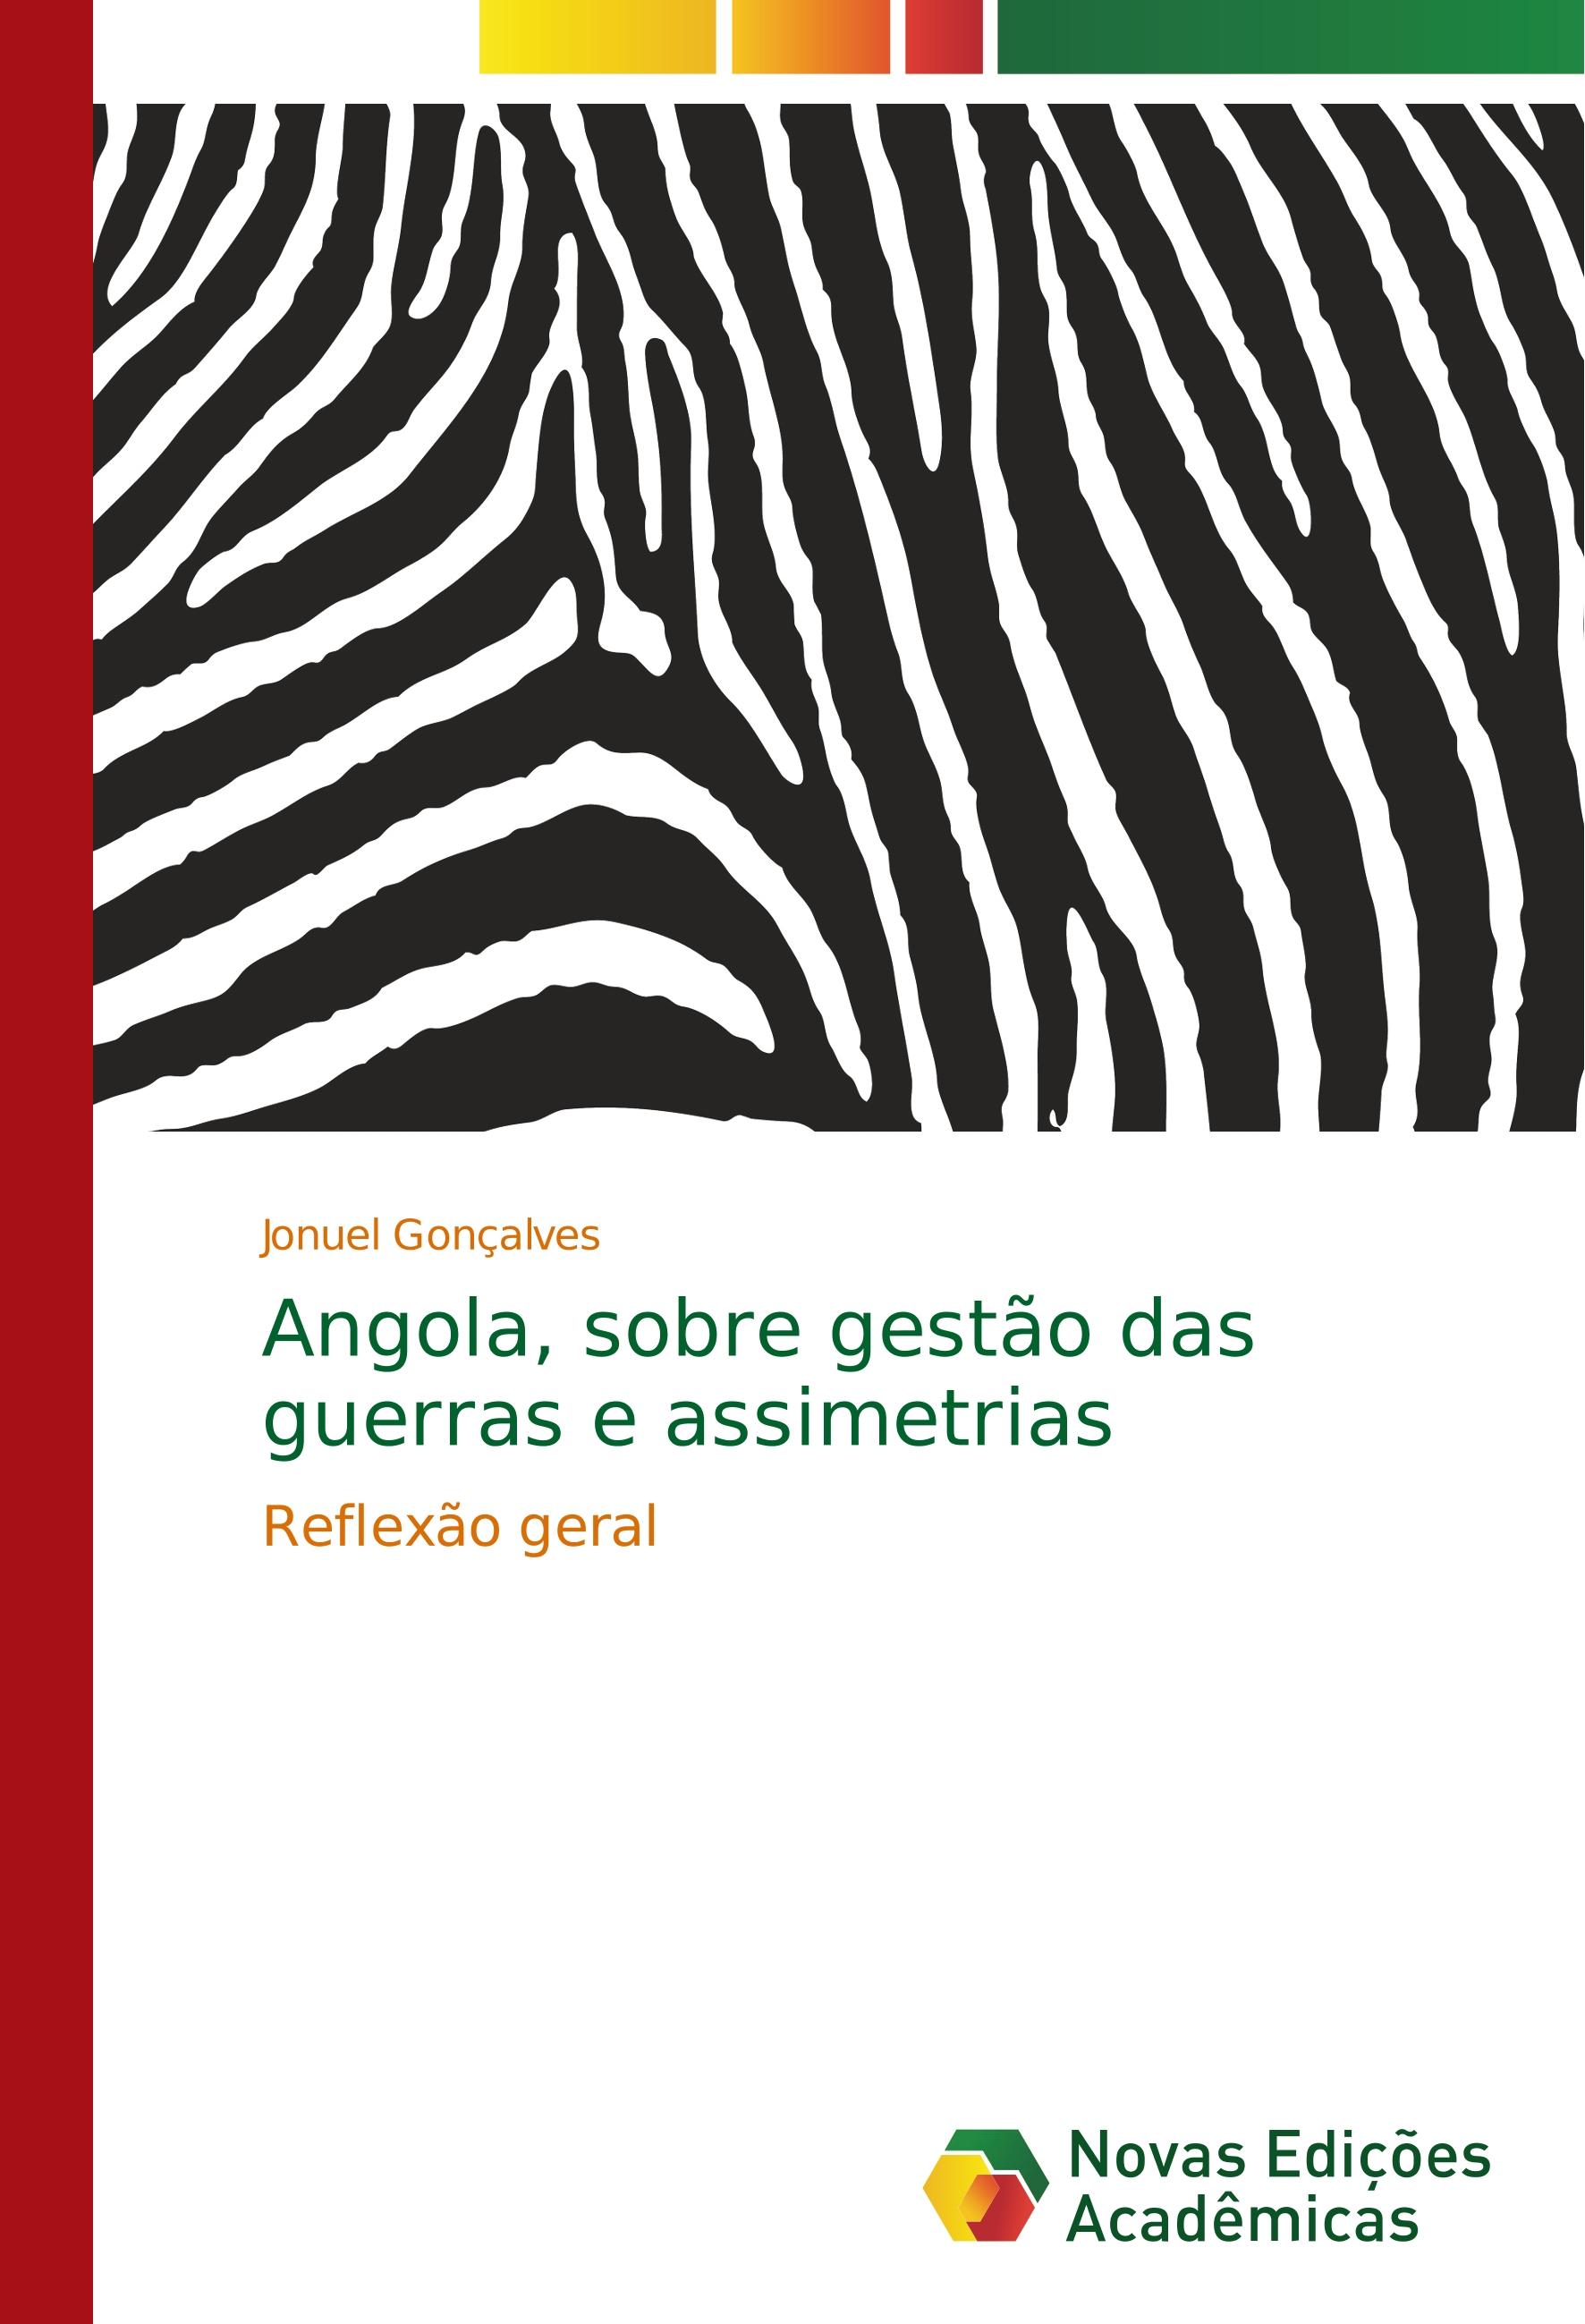 Angola, sobre gestão das guerras e assimetrias - Jonuel Gonçalves